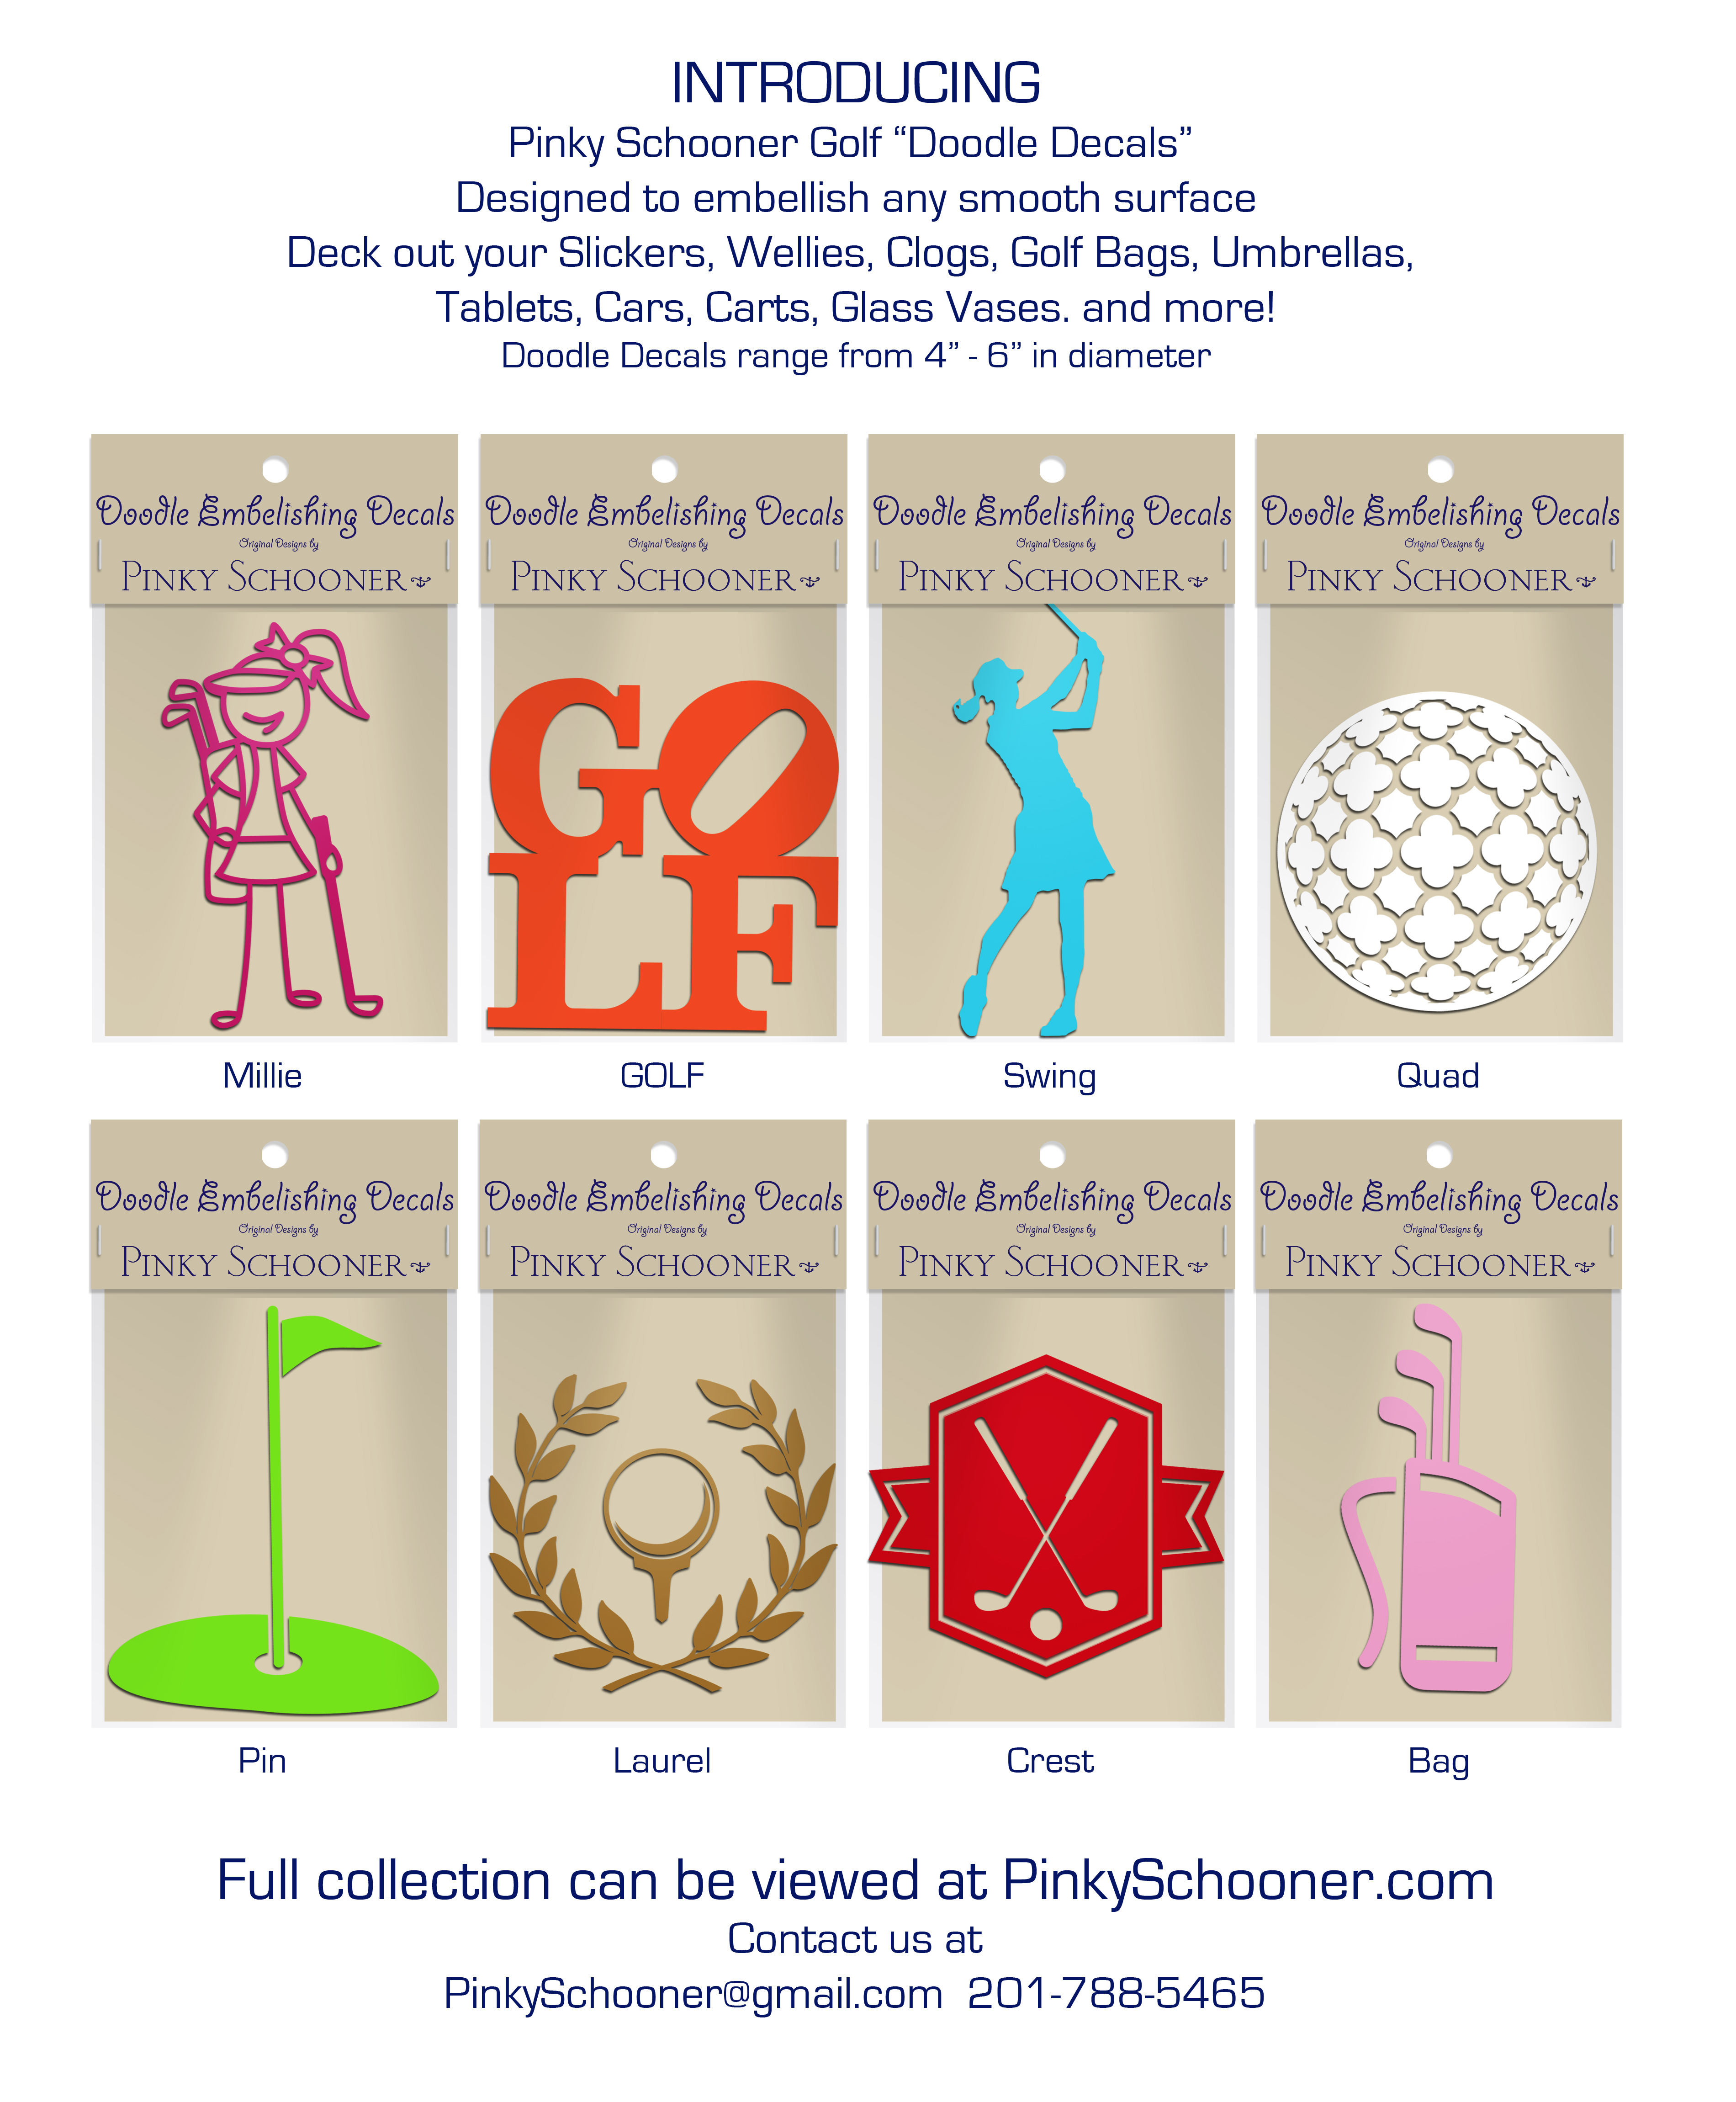 Pinky Schooner Golf Doodle Decals